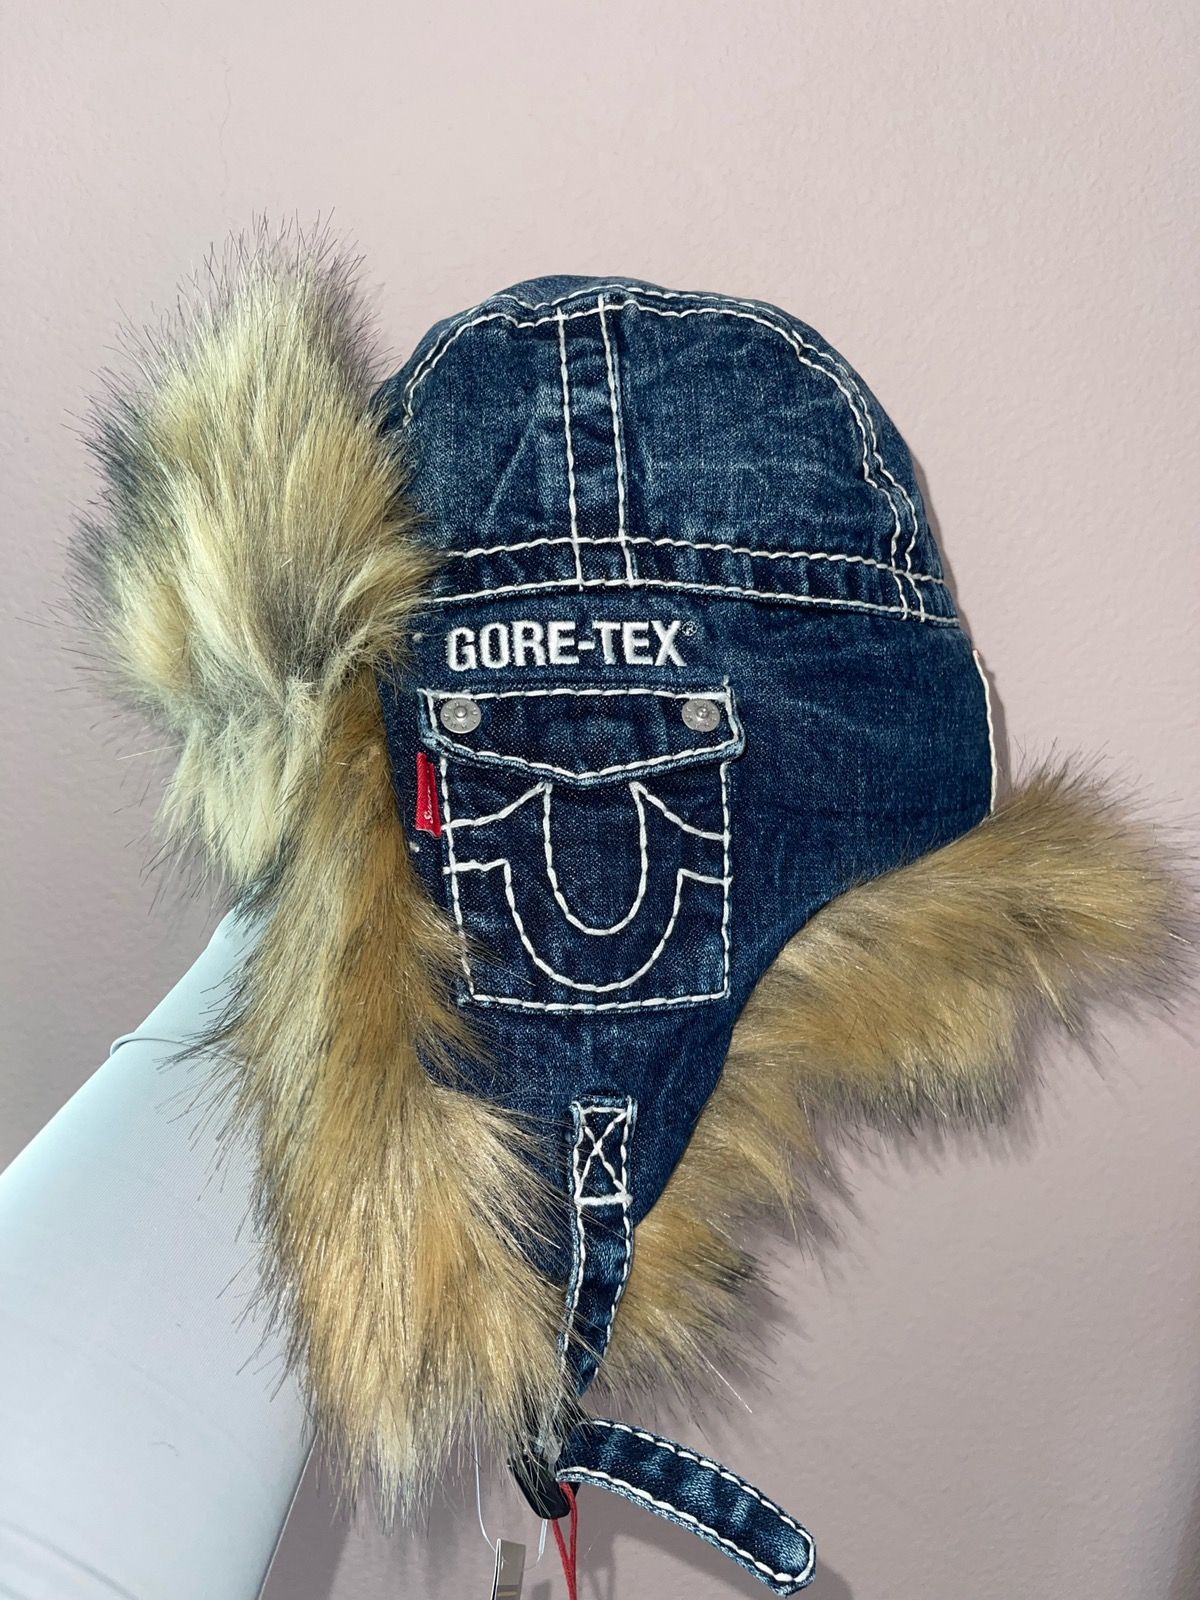 Supreme Supreme True Religion Gore-Tex Trooper | Grailed